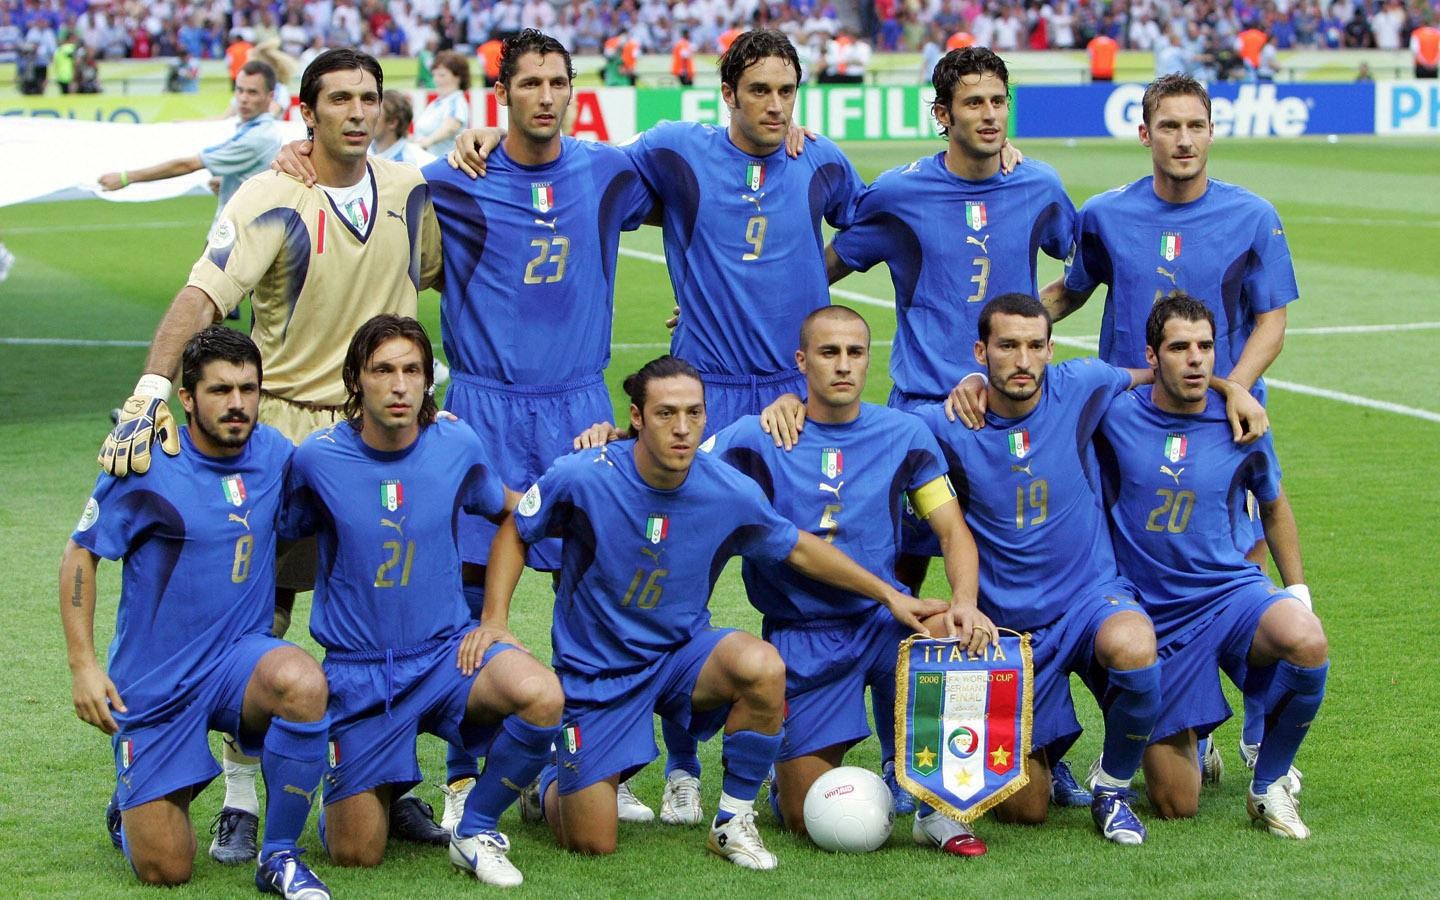 追忆那一抹蓝:2006年世界杯冠军意大利 - 意大